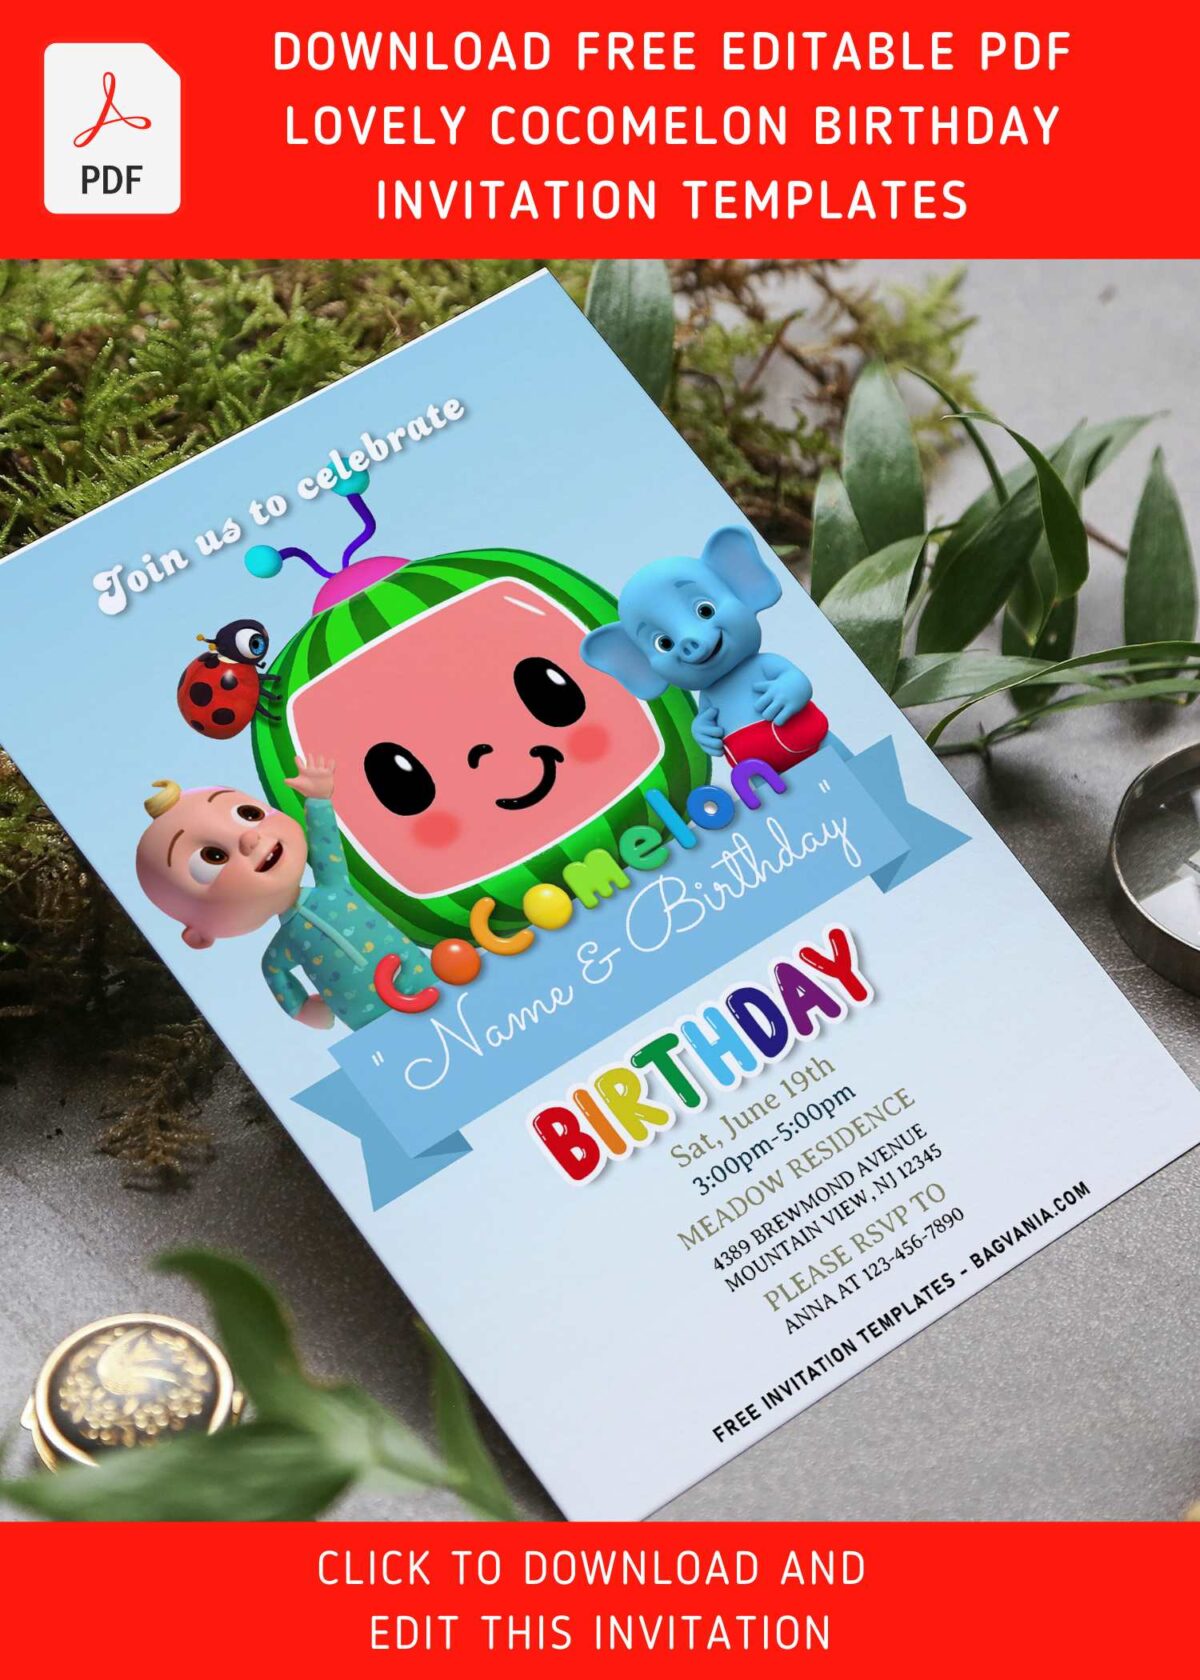 (Free Editable PDF) Bright & Cheerful Cocomelon Birthday Invitation Templates with cute Coco